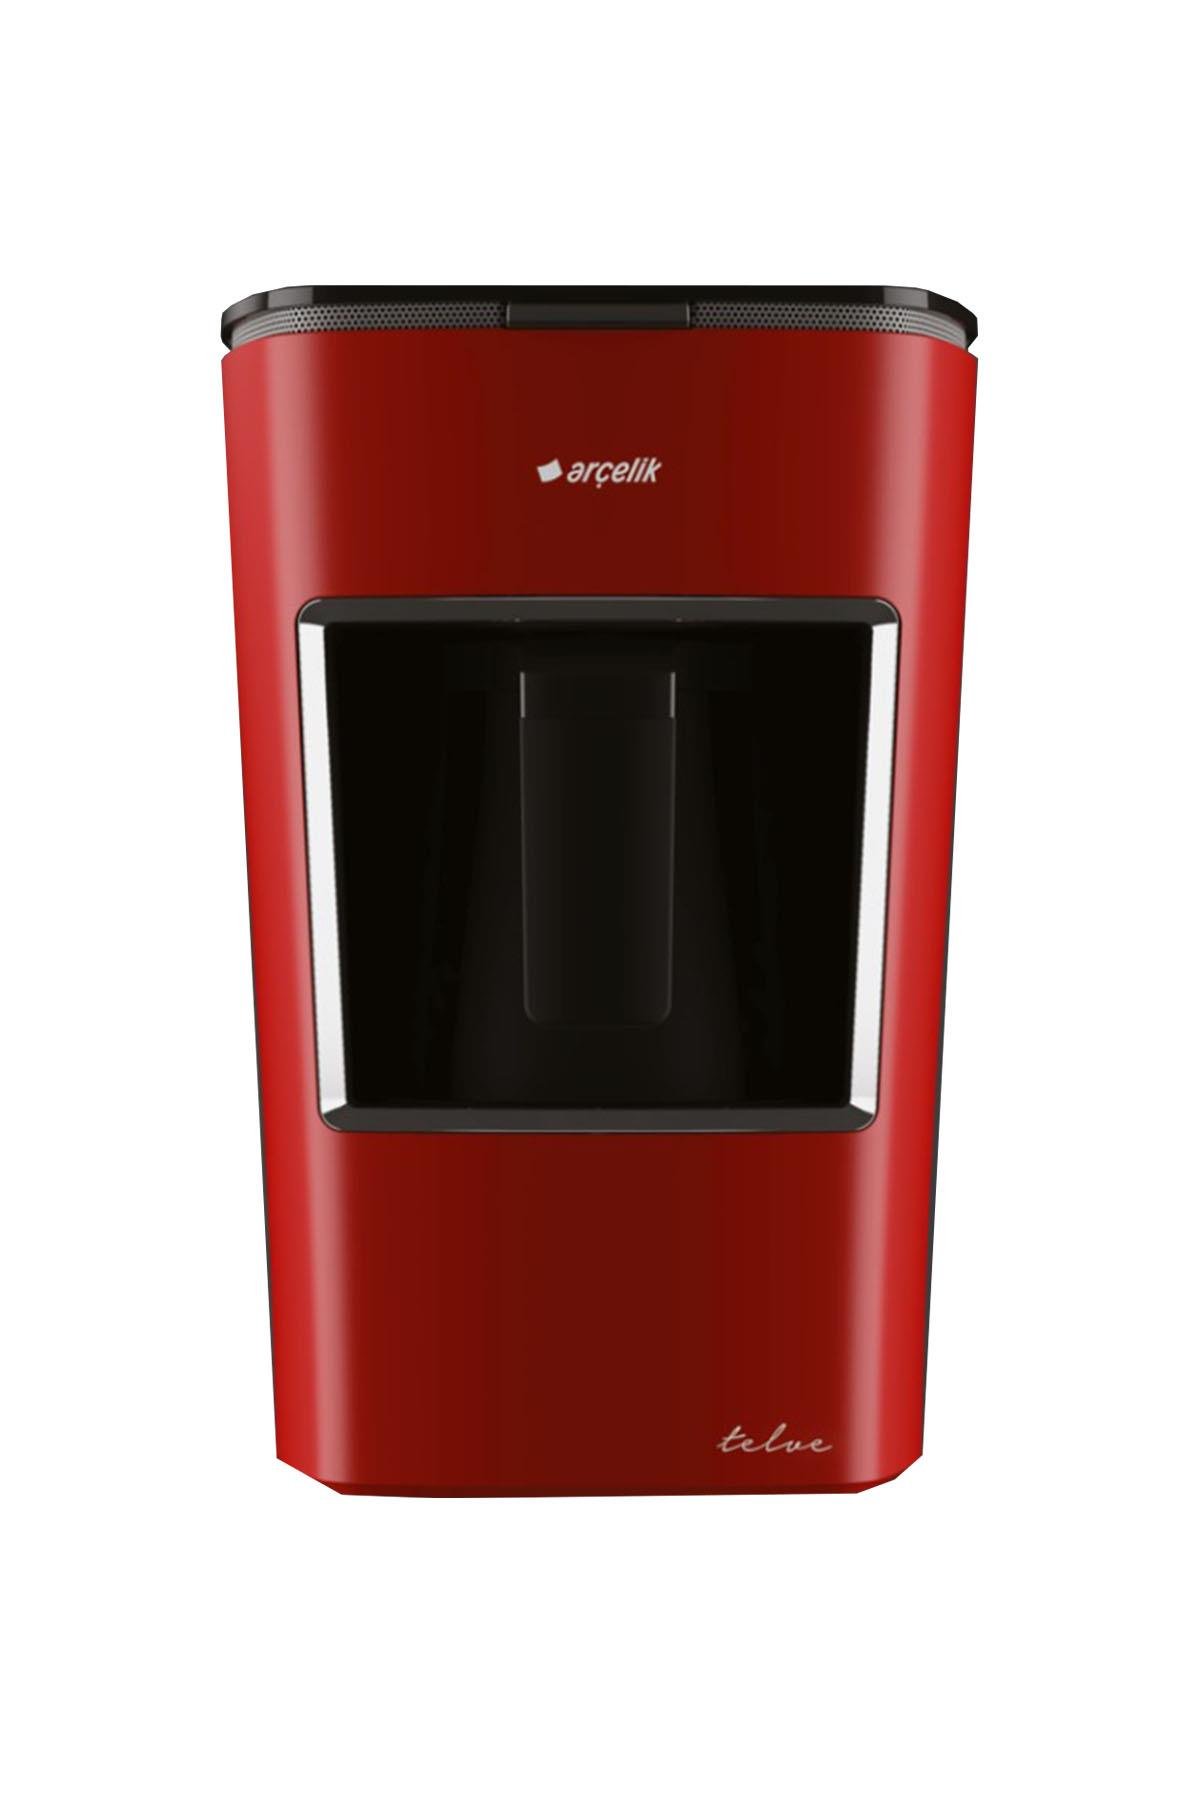 Arçelik K 3300 Mini Telve Kırmızı Türk Kahvesi Makinesi